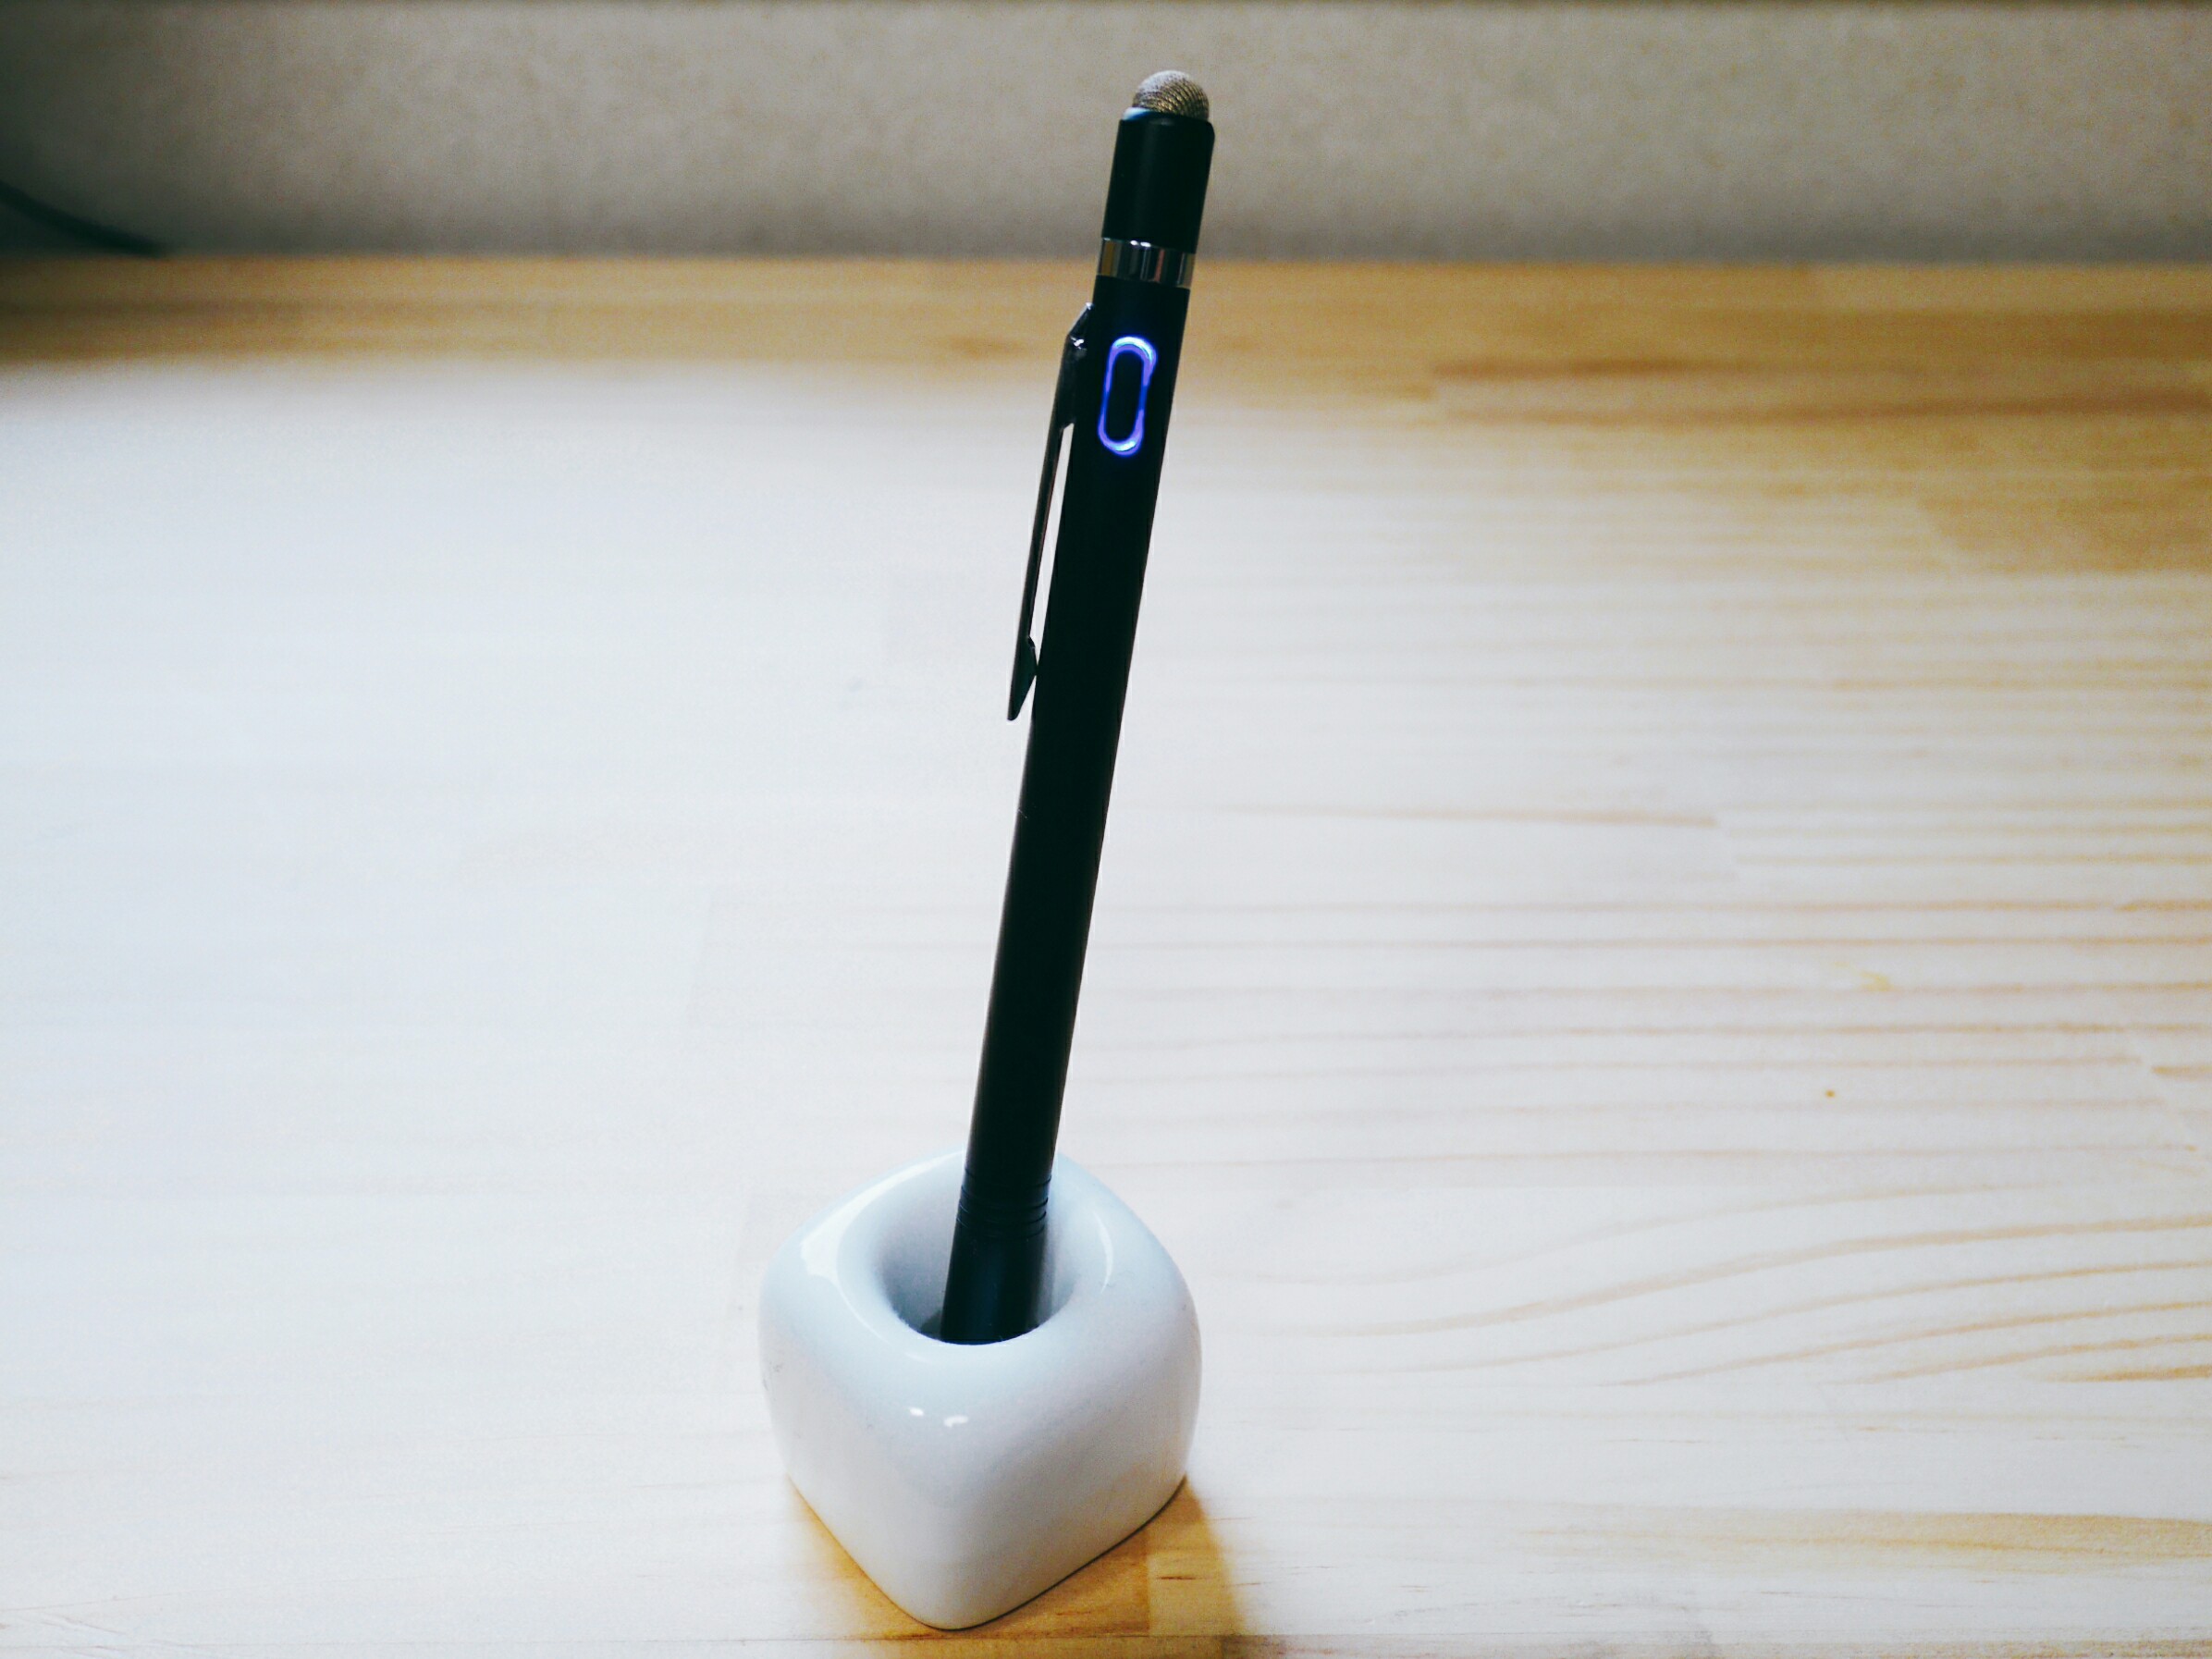 レビュー ツムツムでハイスコアを狙える Atic 充電式 非充電式 両用式スタイラスペン タッチペンを購入 レビュー 6tenths2 Blog